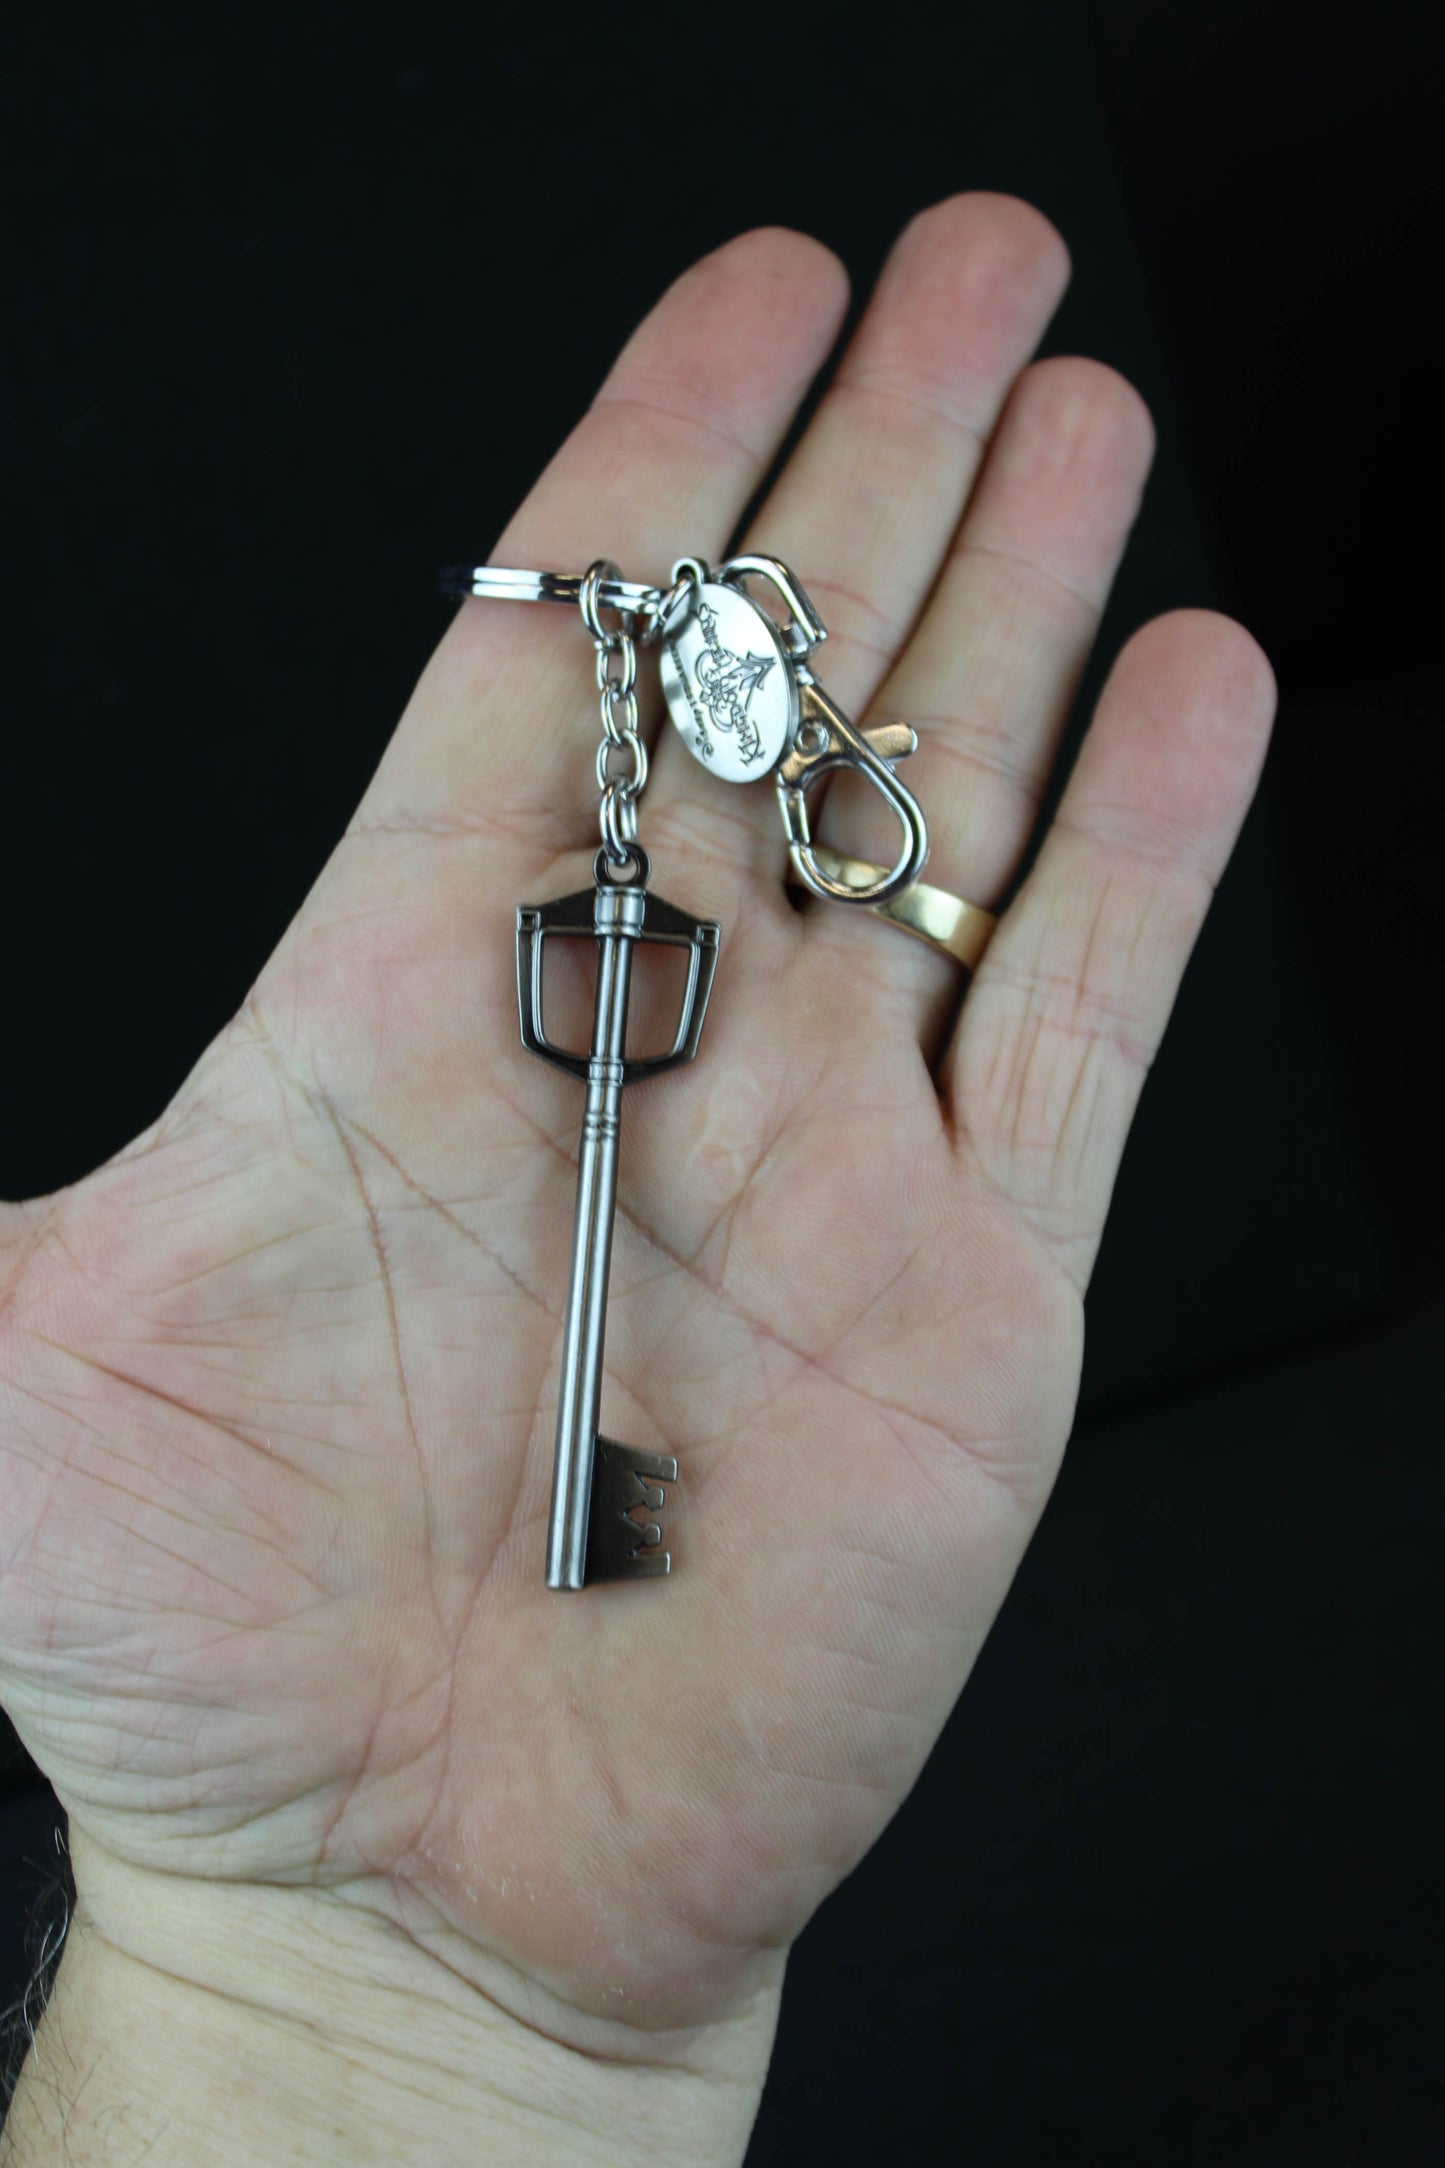 Kingdom Key Sora's Keyblade Pewter Keychain